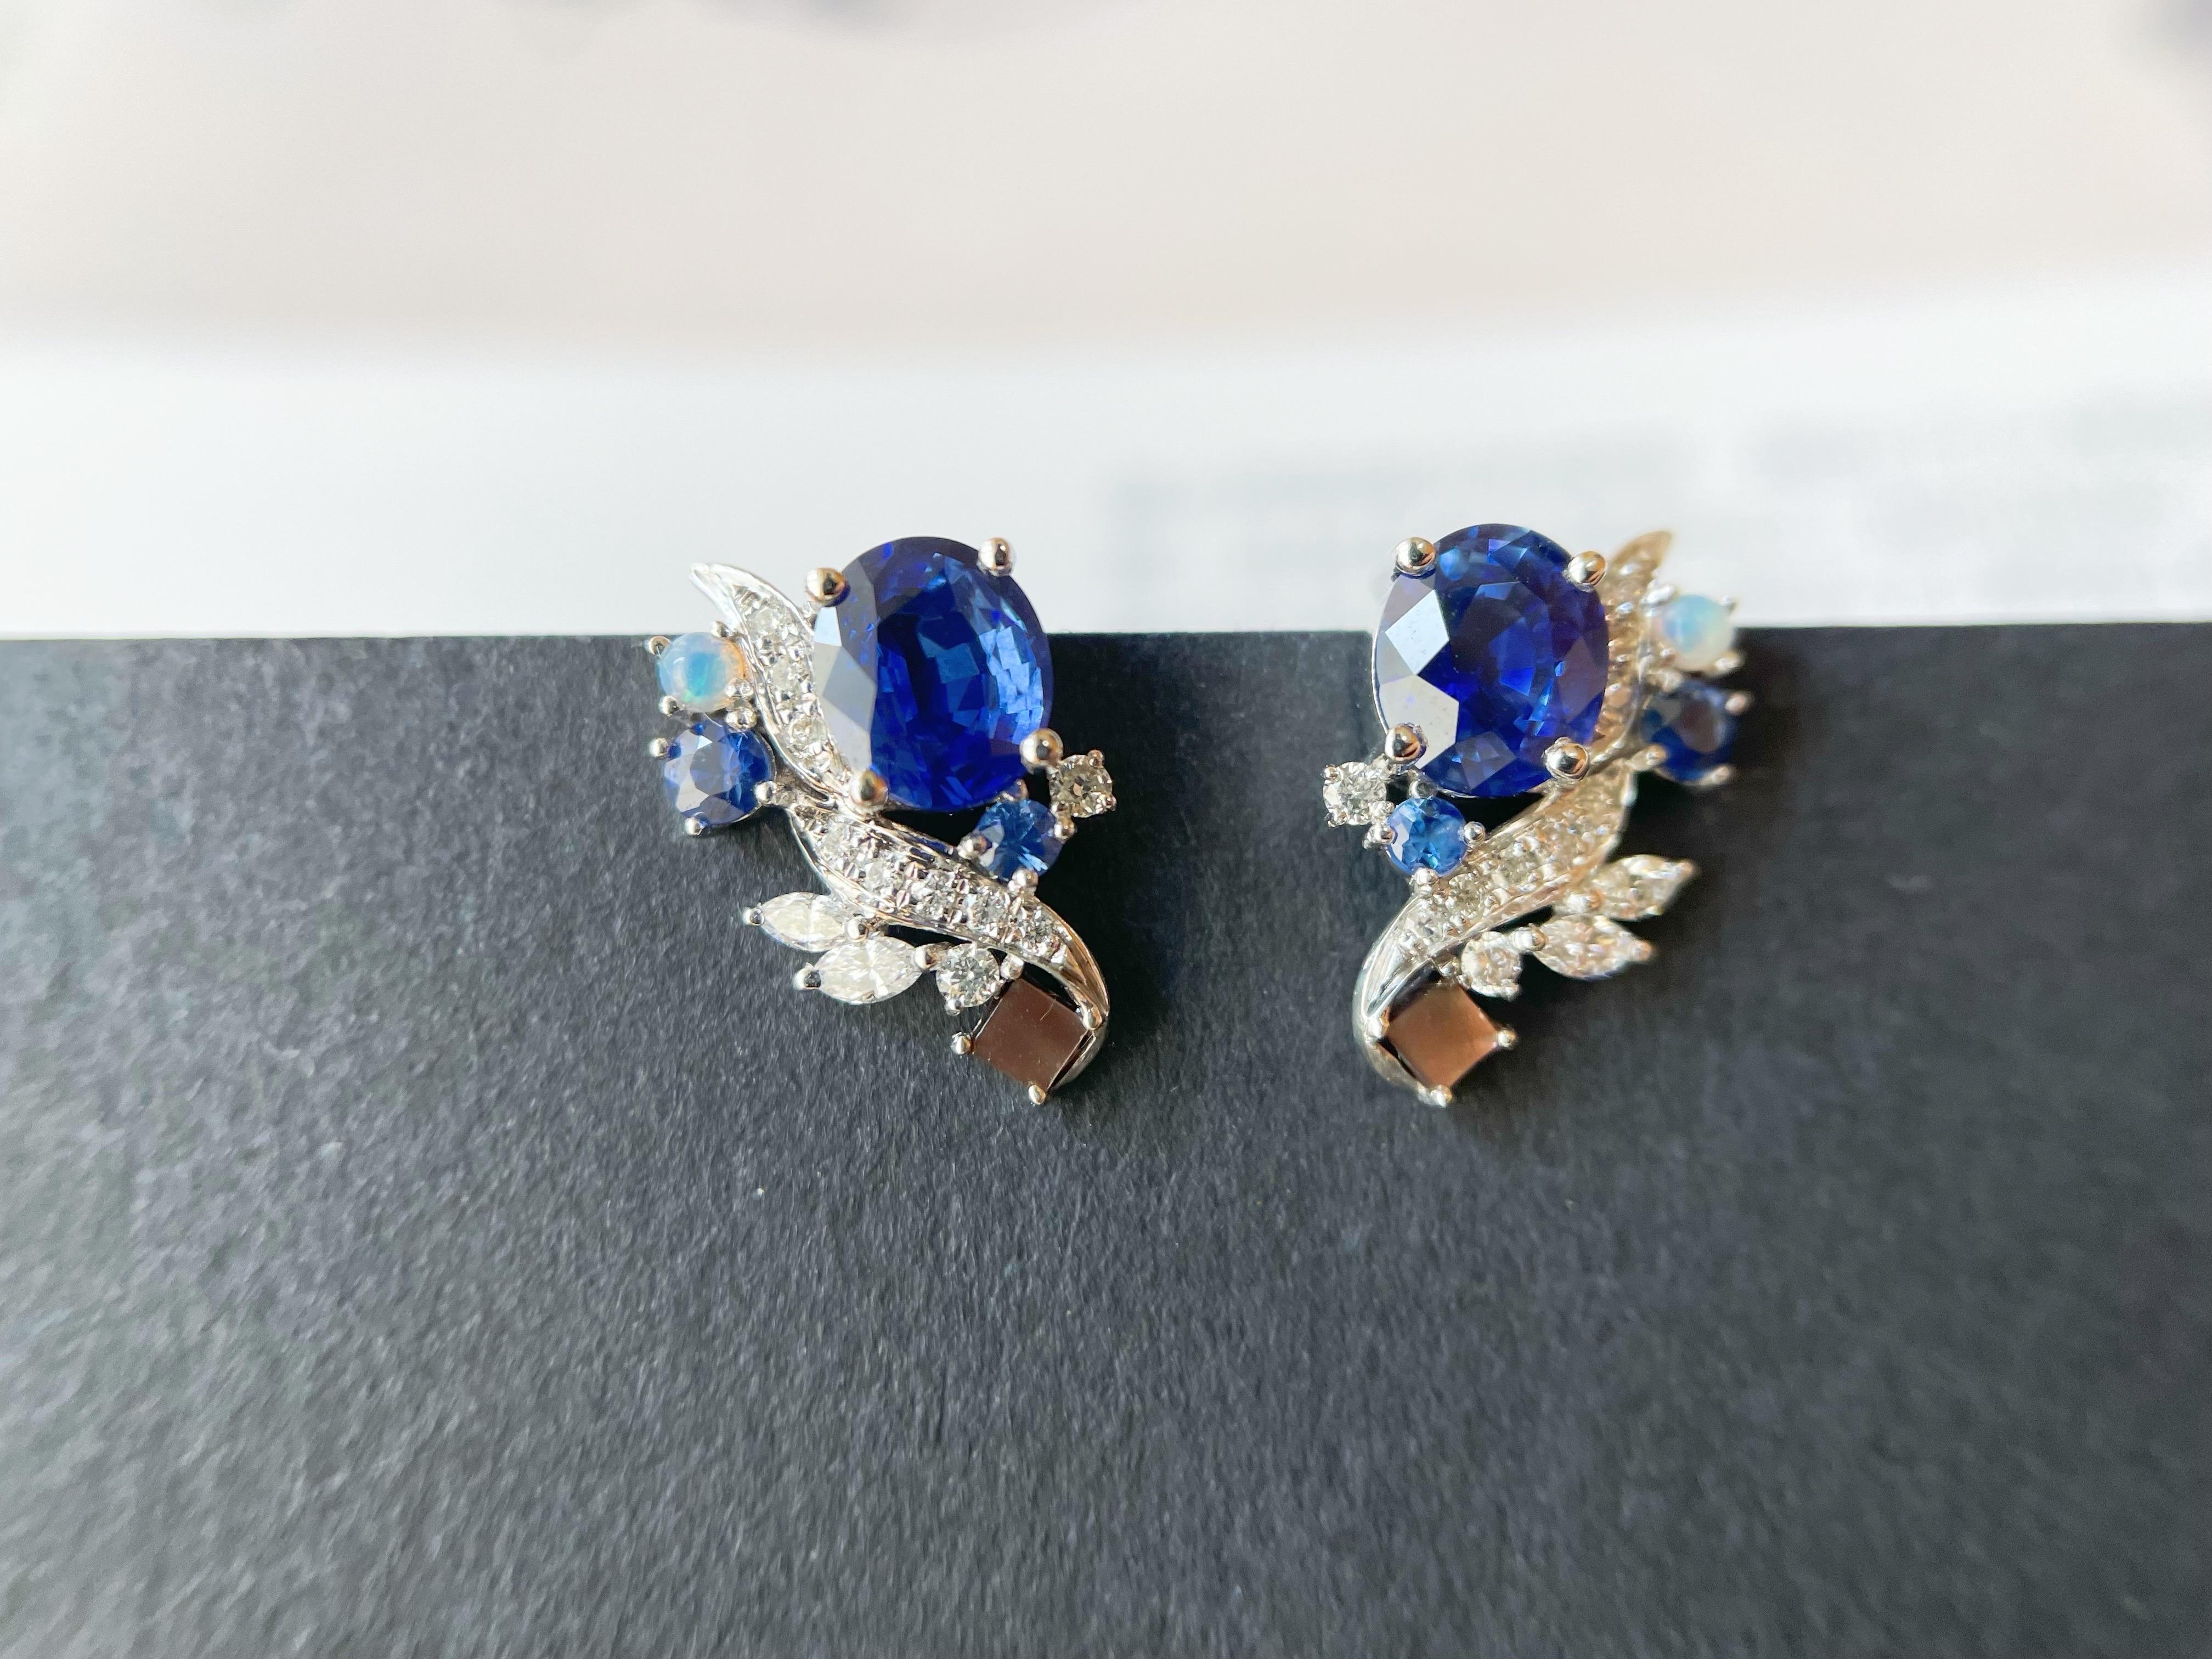 Deux magnifiques saphirs bleus naturels du Sri Lanka ornés de diamants brillants, d'opales et de nacres sertis dans un design simple et moderne. La paire de boucles d'oreilles est conçue sur mesure et est unique en son genre. Les saphirs naturels